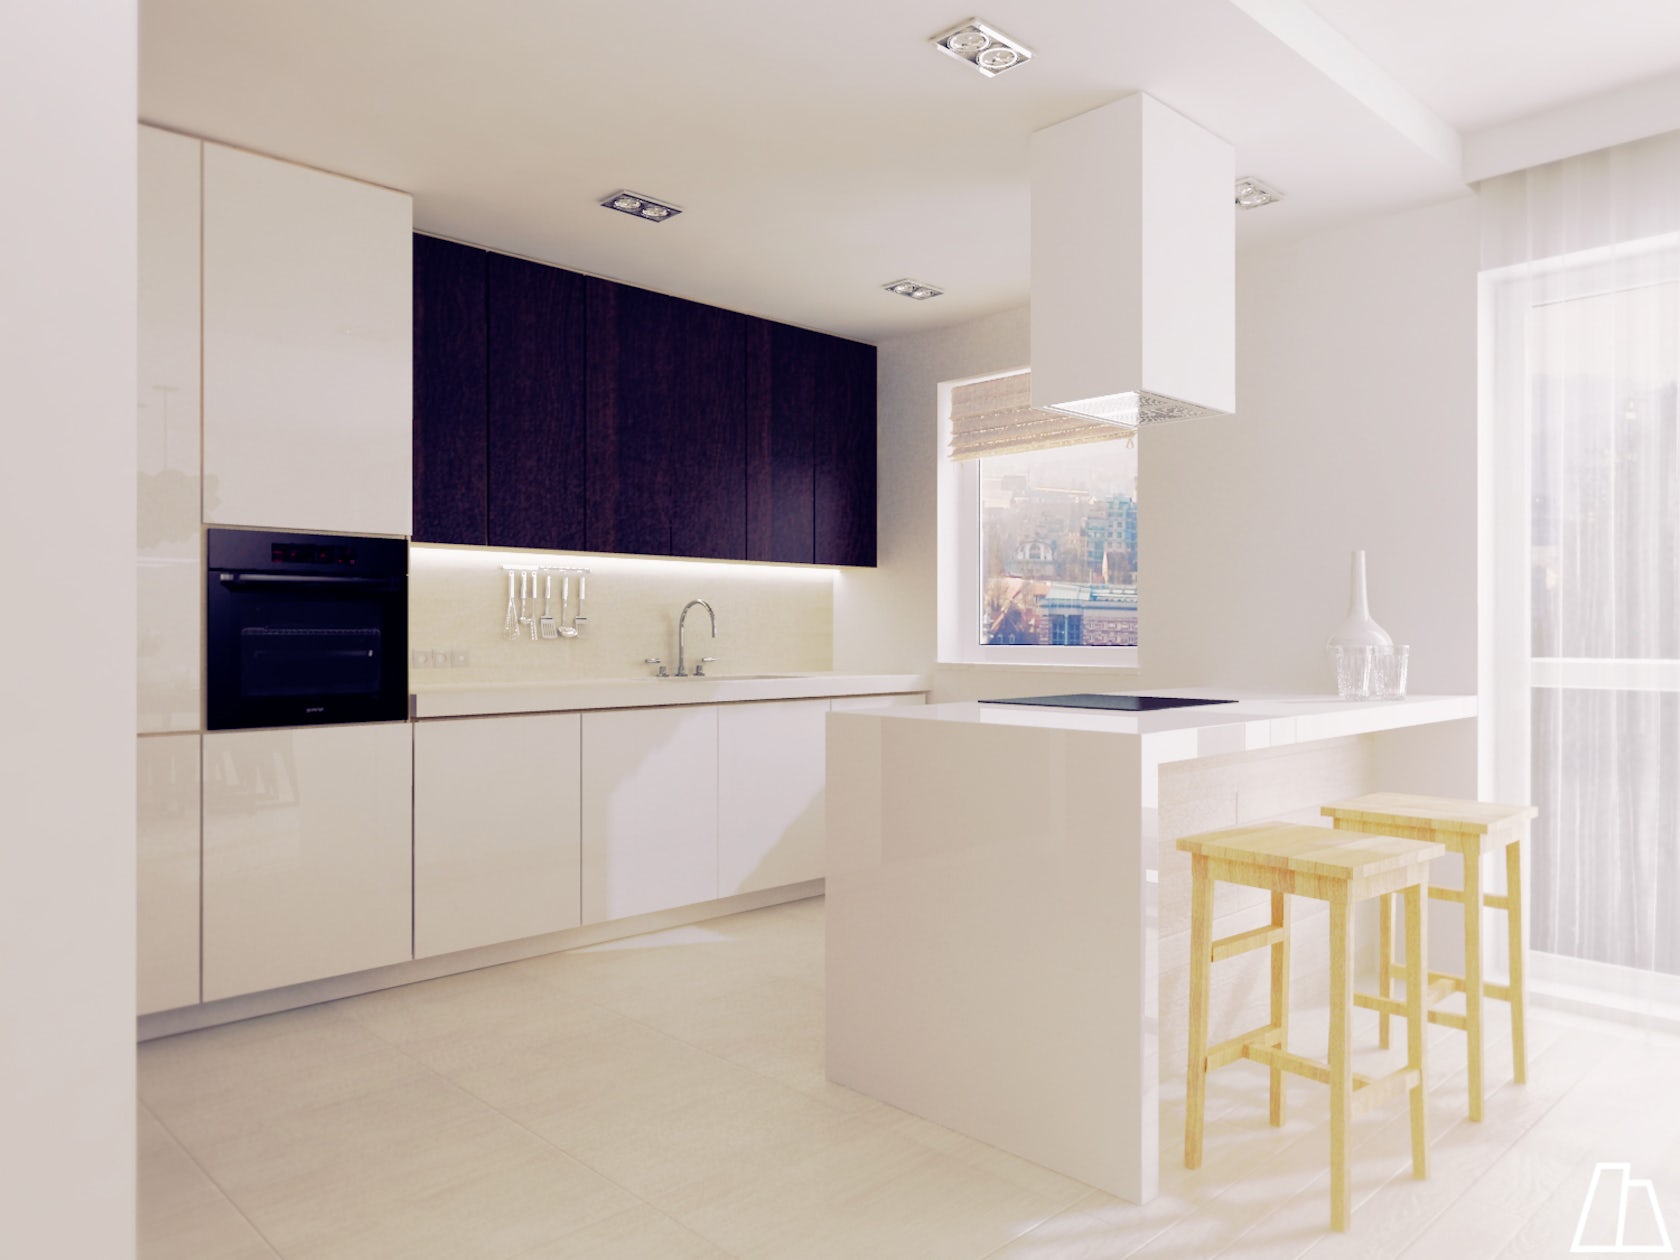 Kitchen / interior design - Architizer